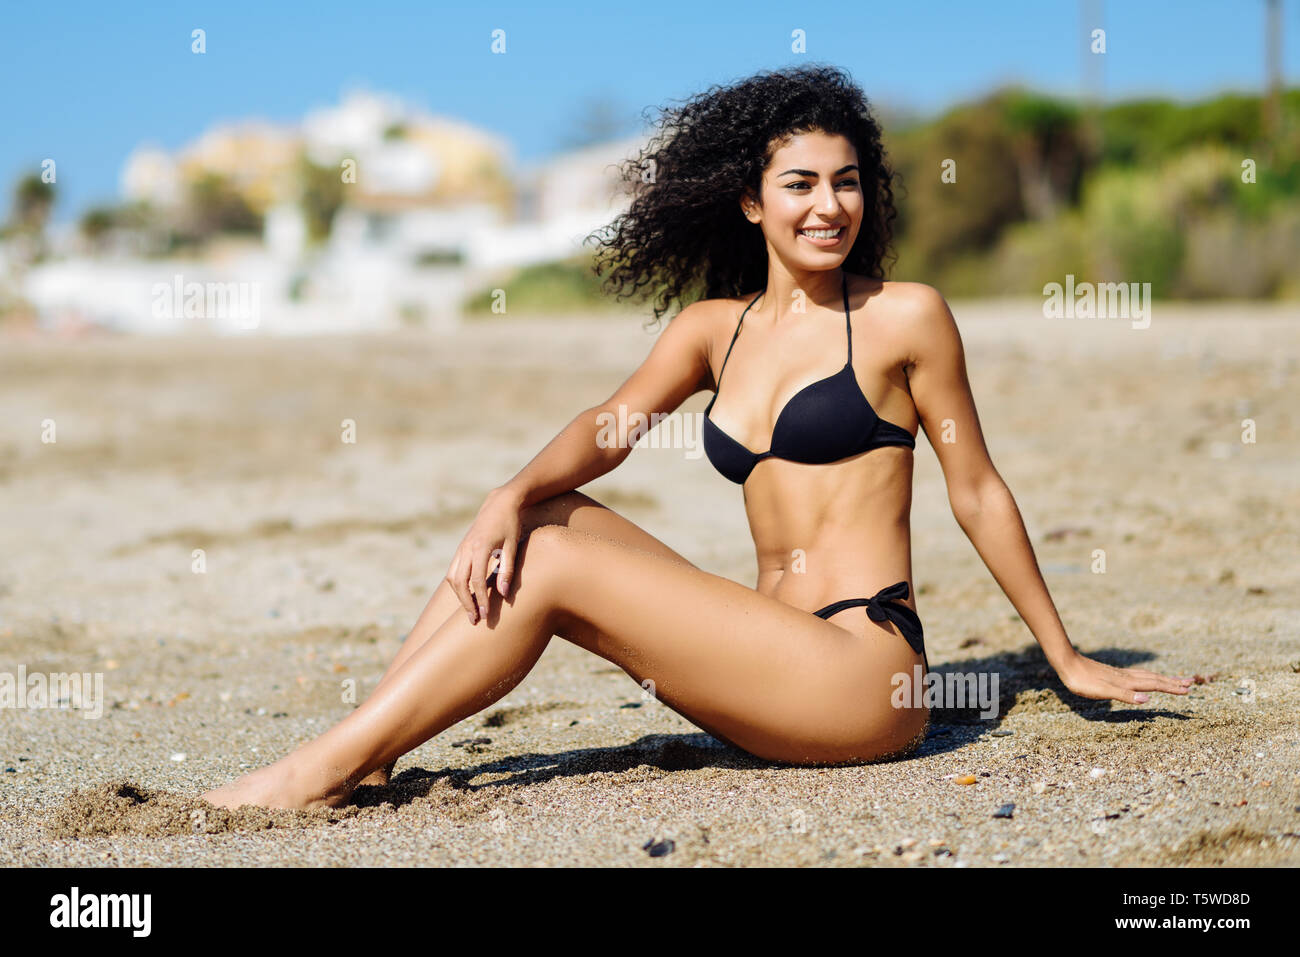 Arabic woman with beautiful body in bikini lying on the beach sand Stock  Photo - Alamy